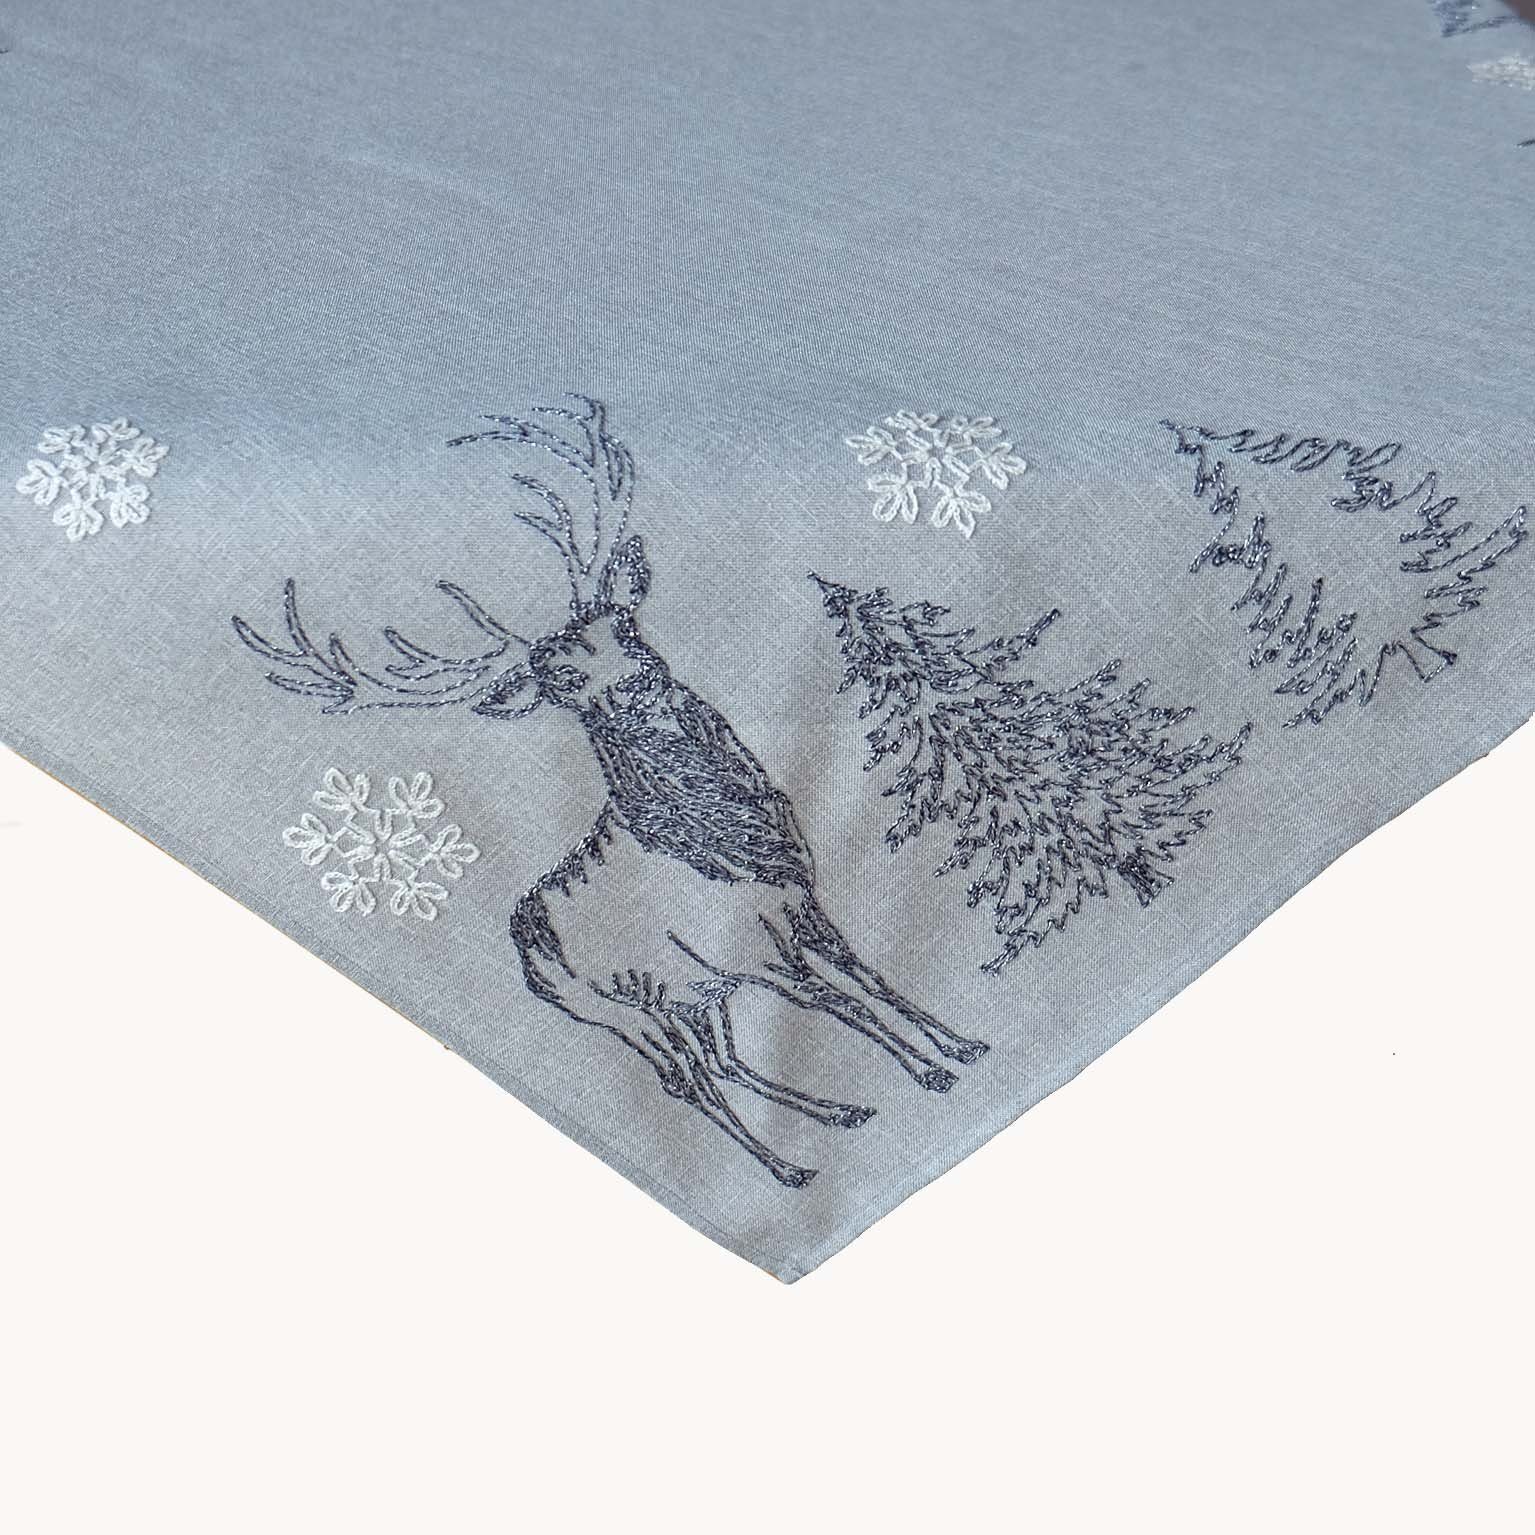 Silber grau weiß Bäume Raebel Elch Stickerei Weihnachten, bestickt Tischläufer Schneesterne